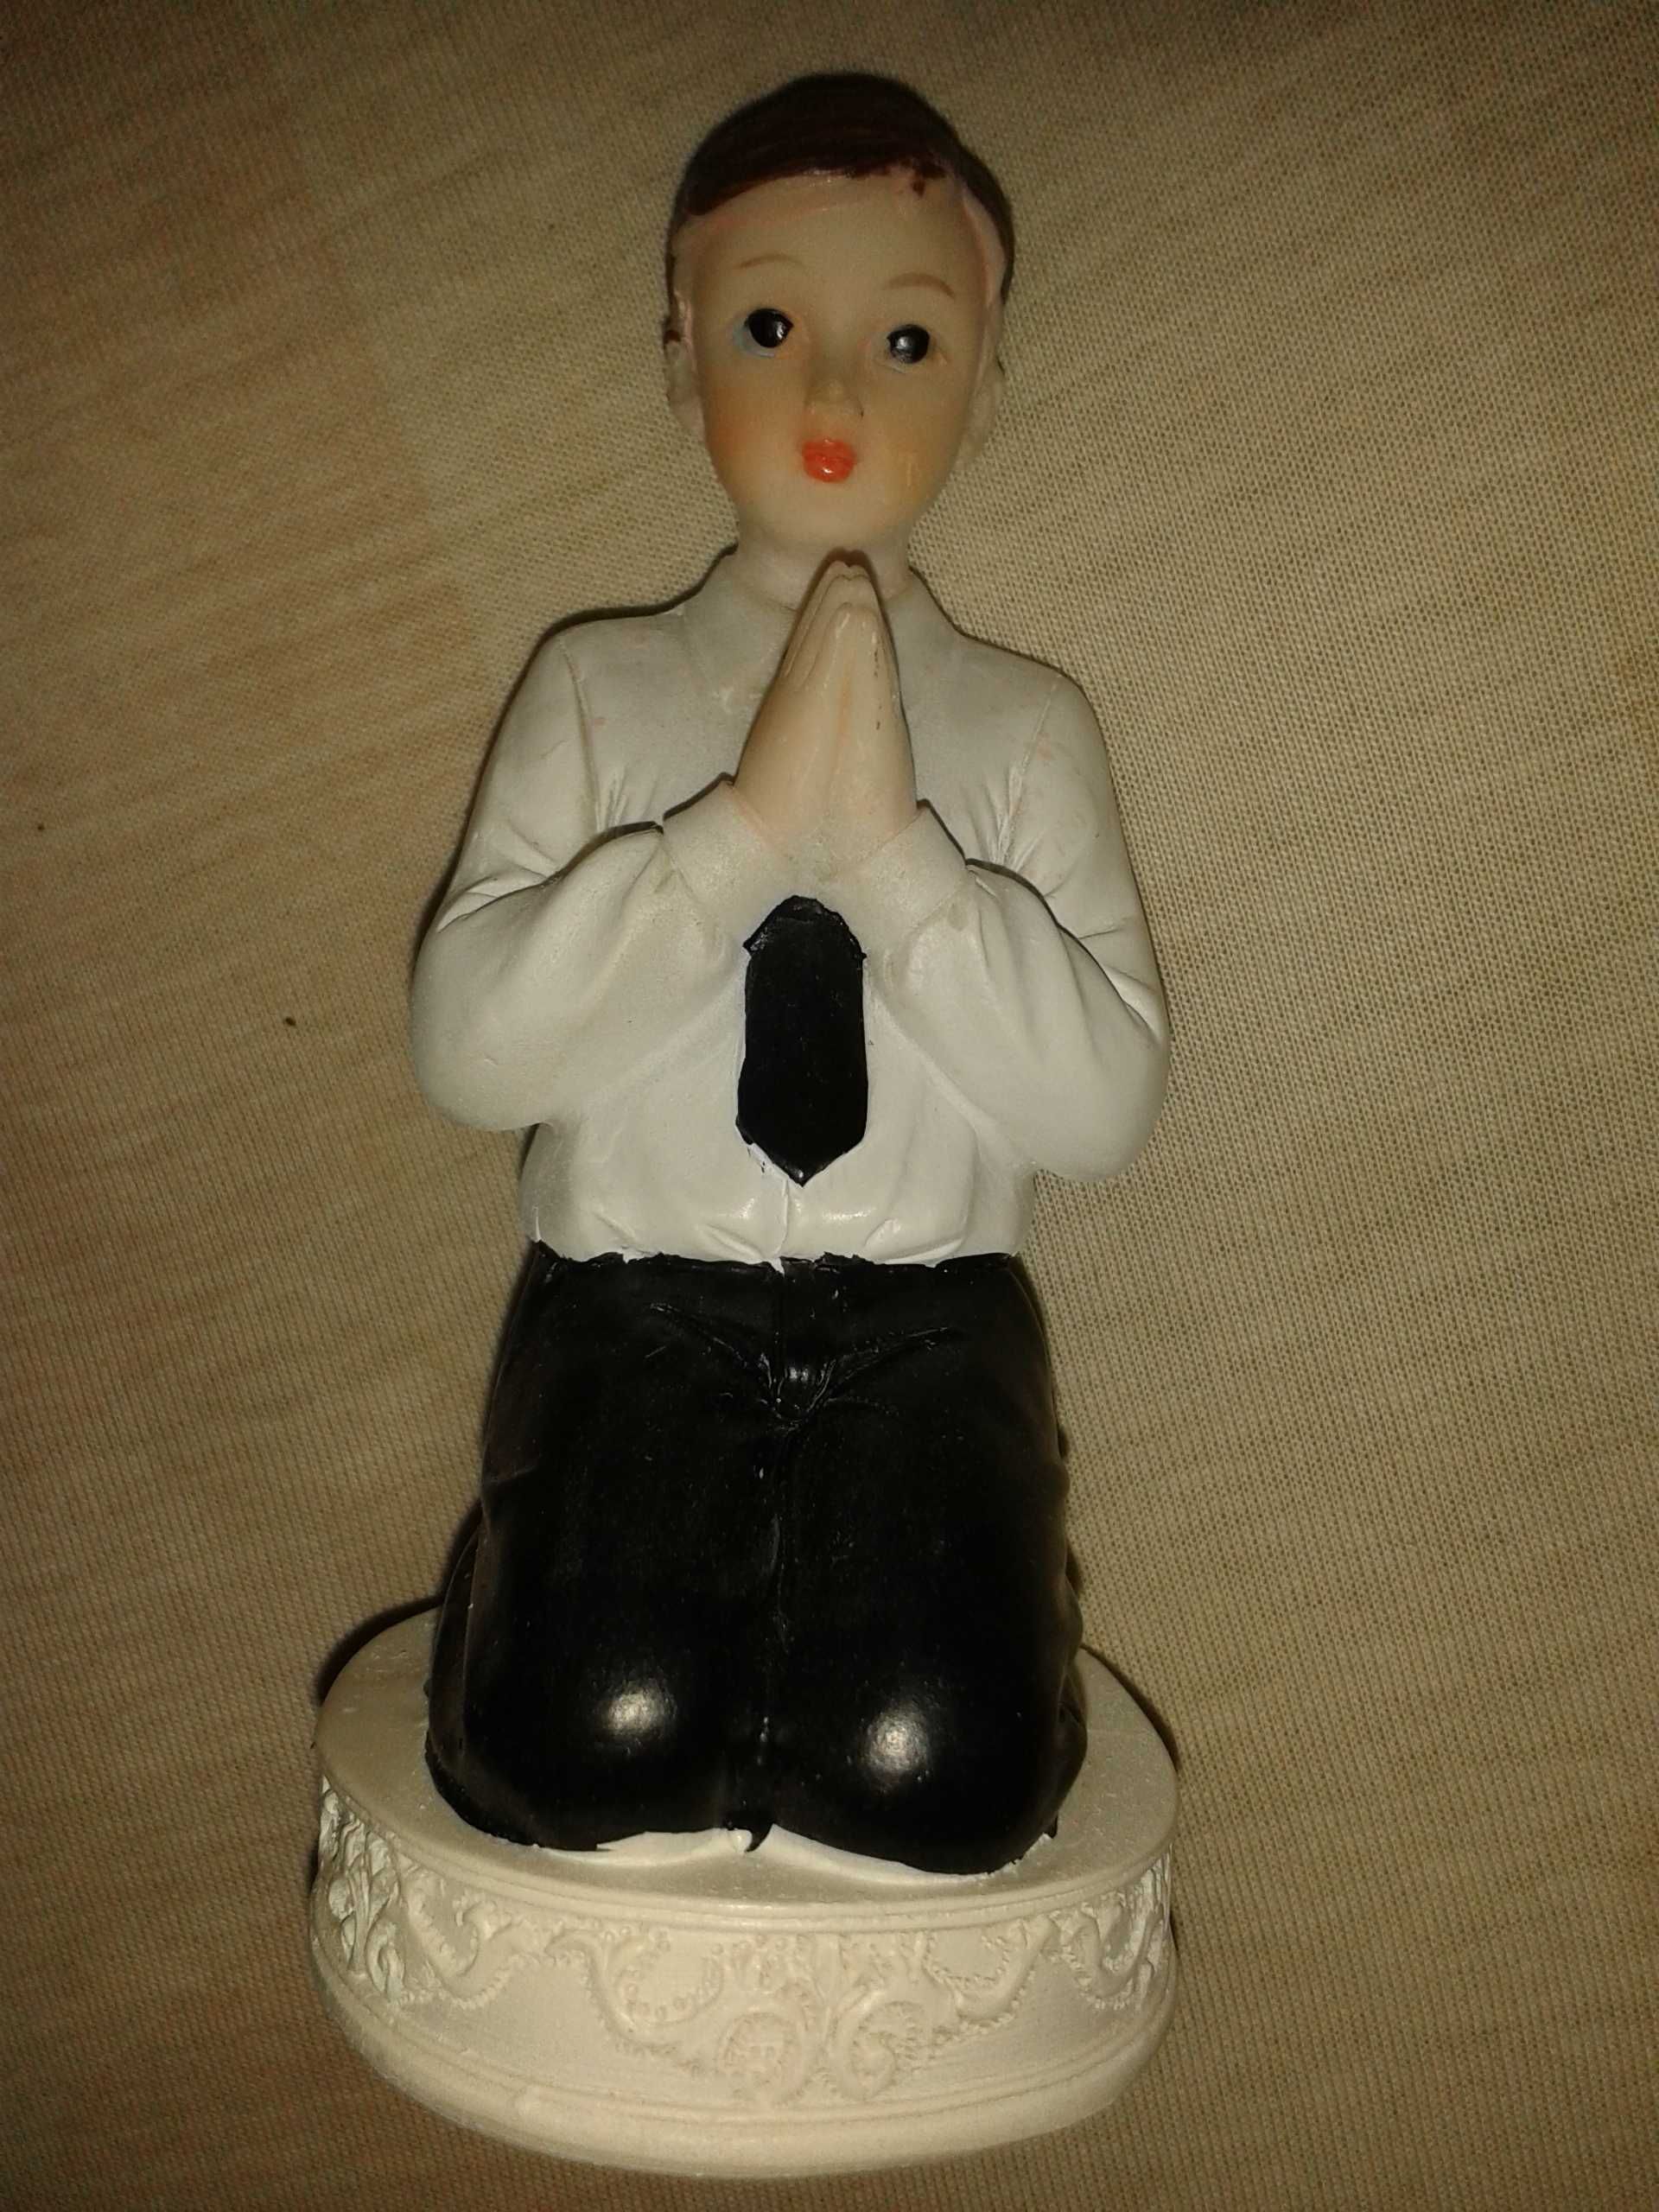 KOMUNIA nowa figurka na tort komunijny chłopiec modlący się